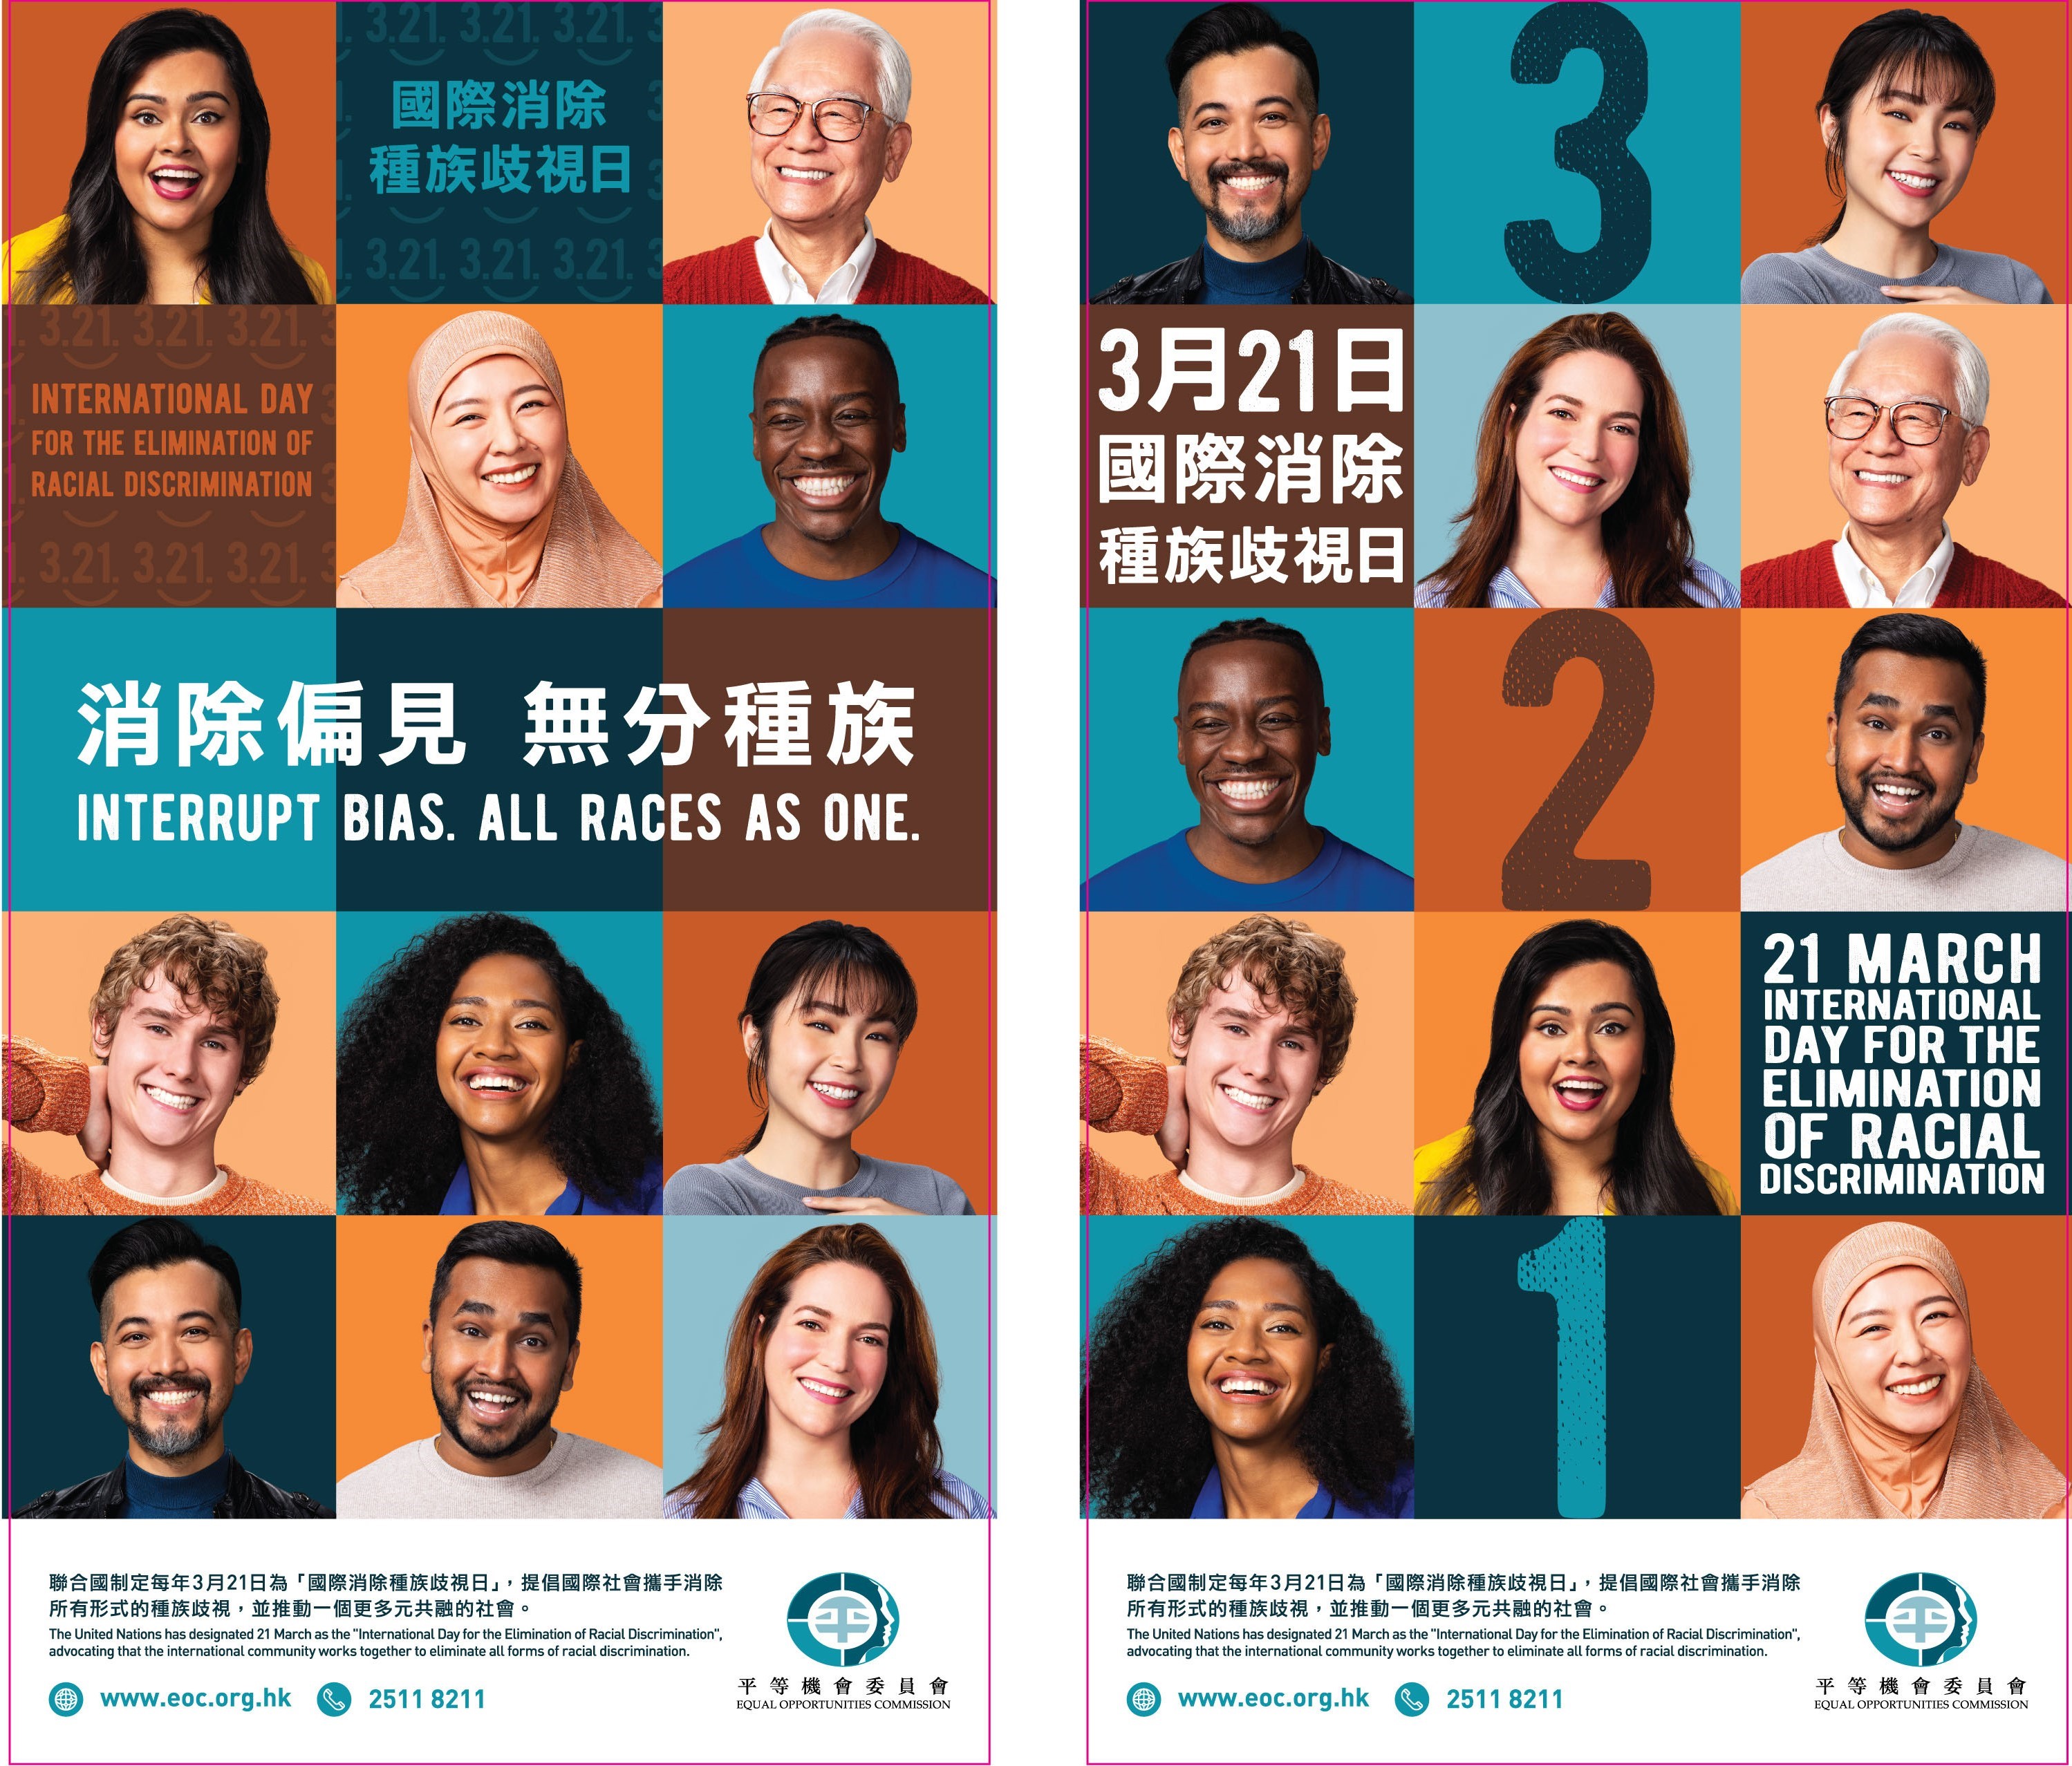 国际消除种族歧视日「消除偏见 无分种族」宣传广告。